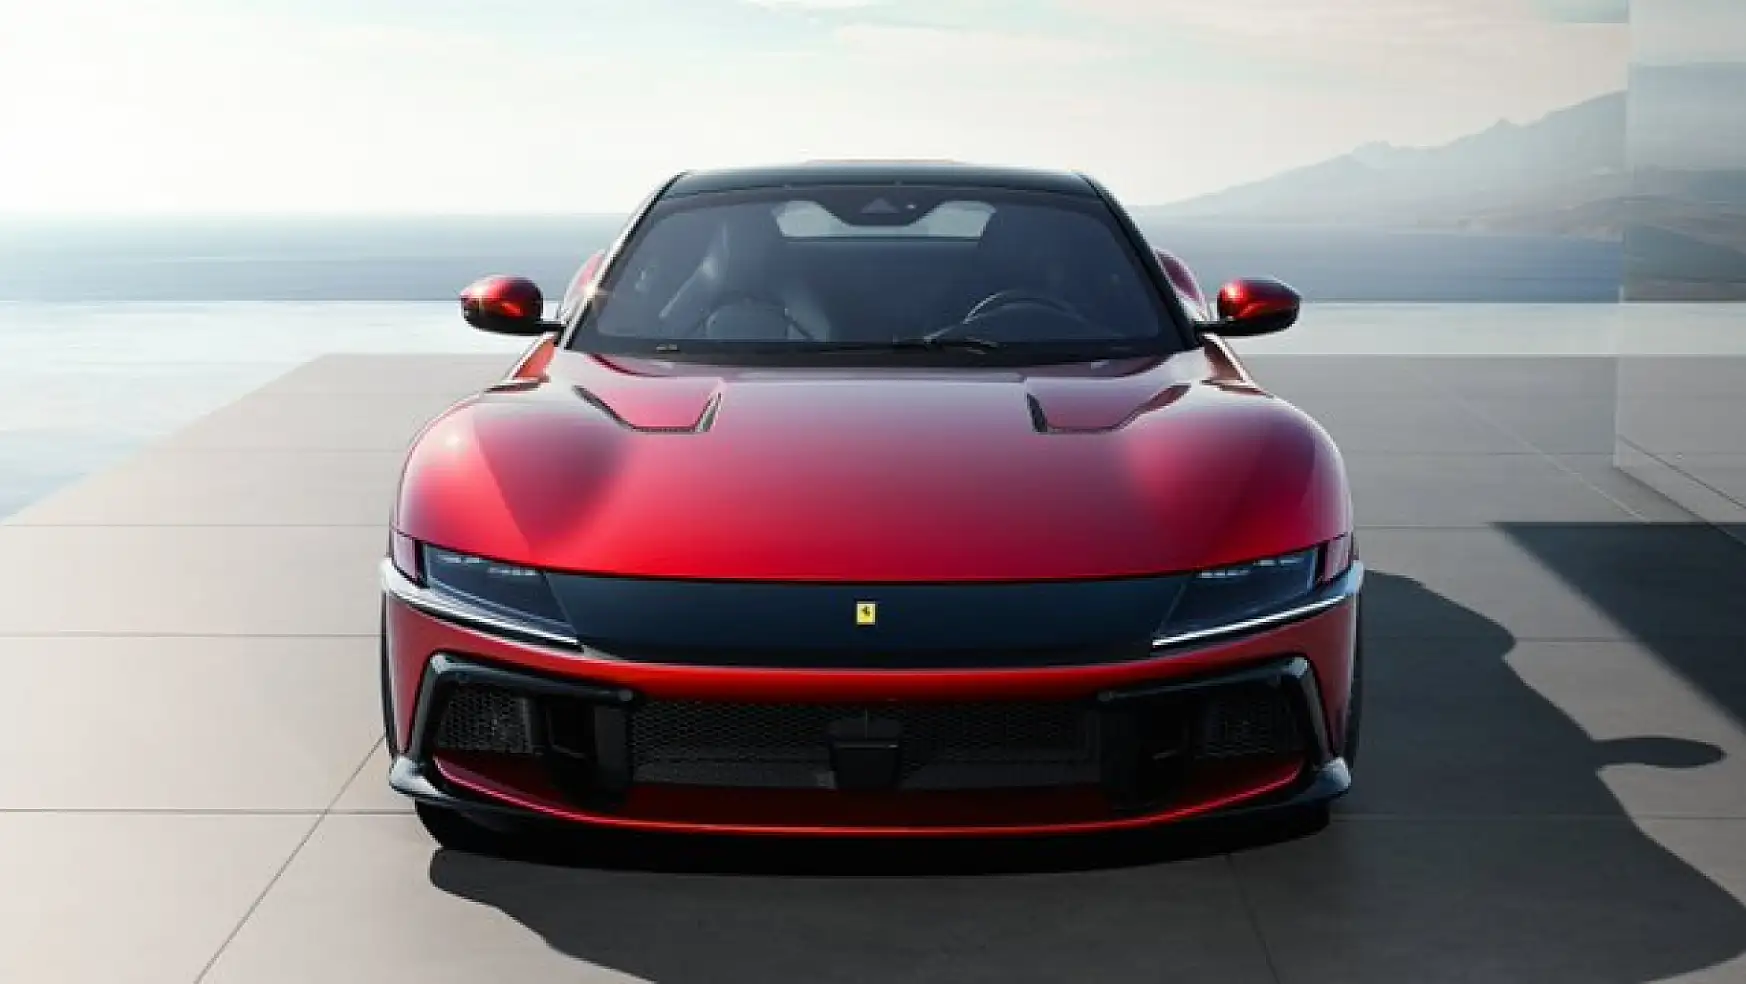 Ferrari, en güçlü içten yanmalı arabasını tanıttı Ferrari 12 12Cilindri'nin fiyatı ne kadar?